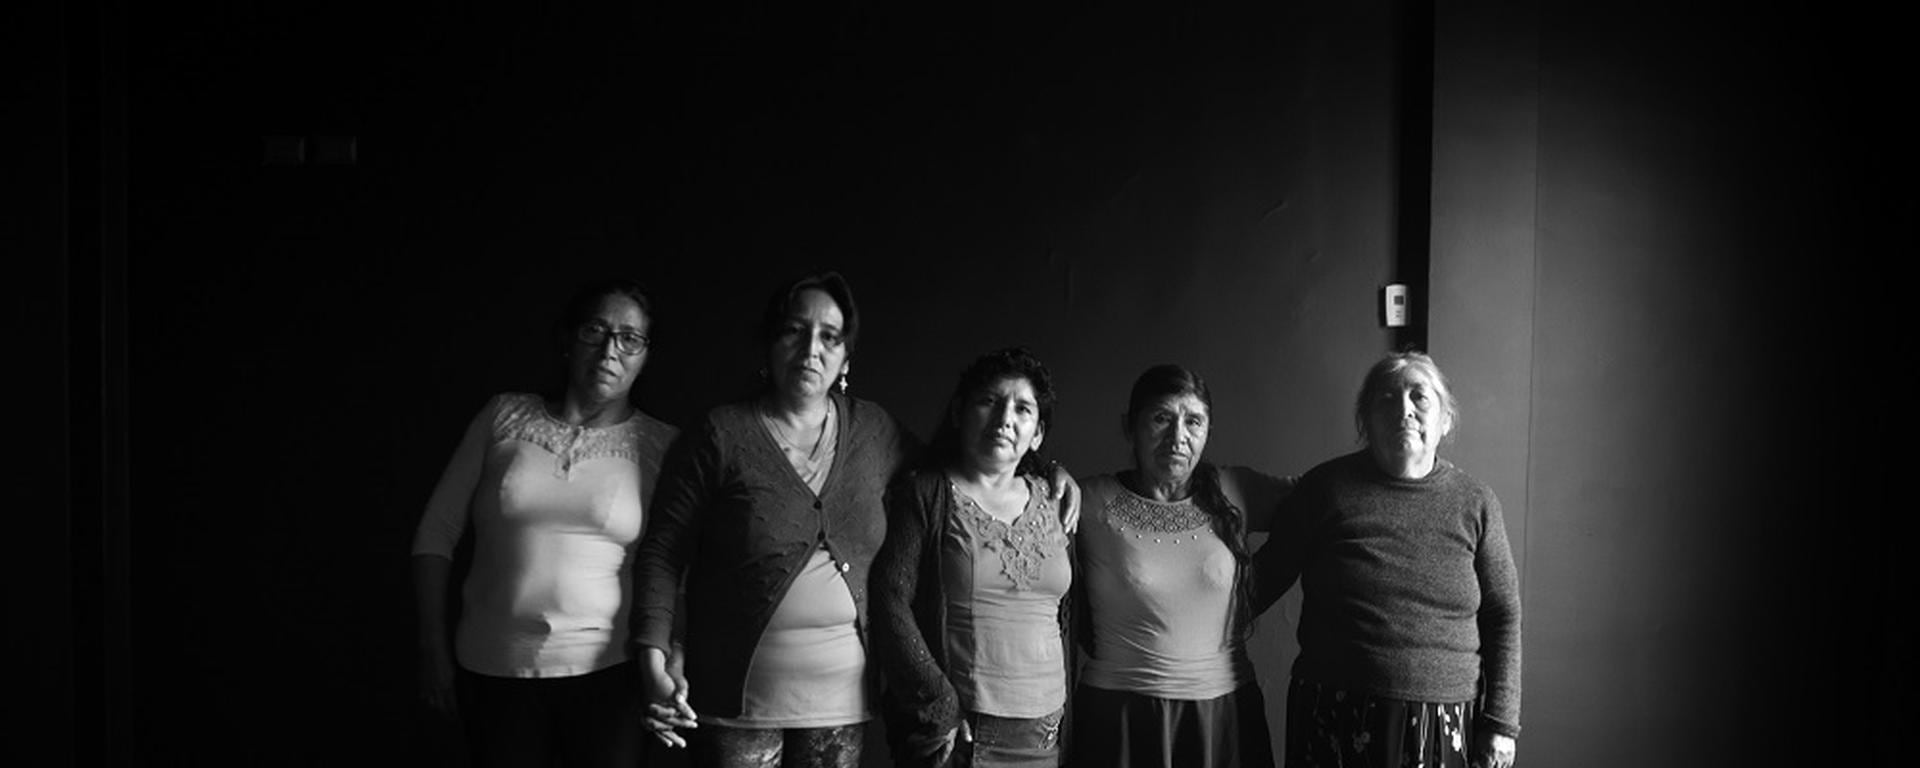 El proyecto artístico de danza y memoria en homenaje a las víctimas de desapariciones